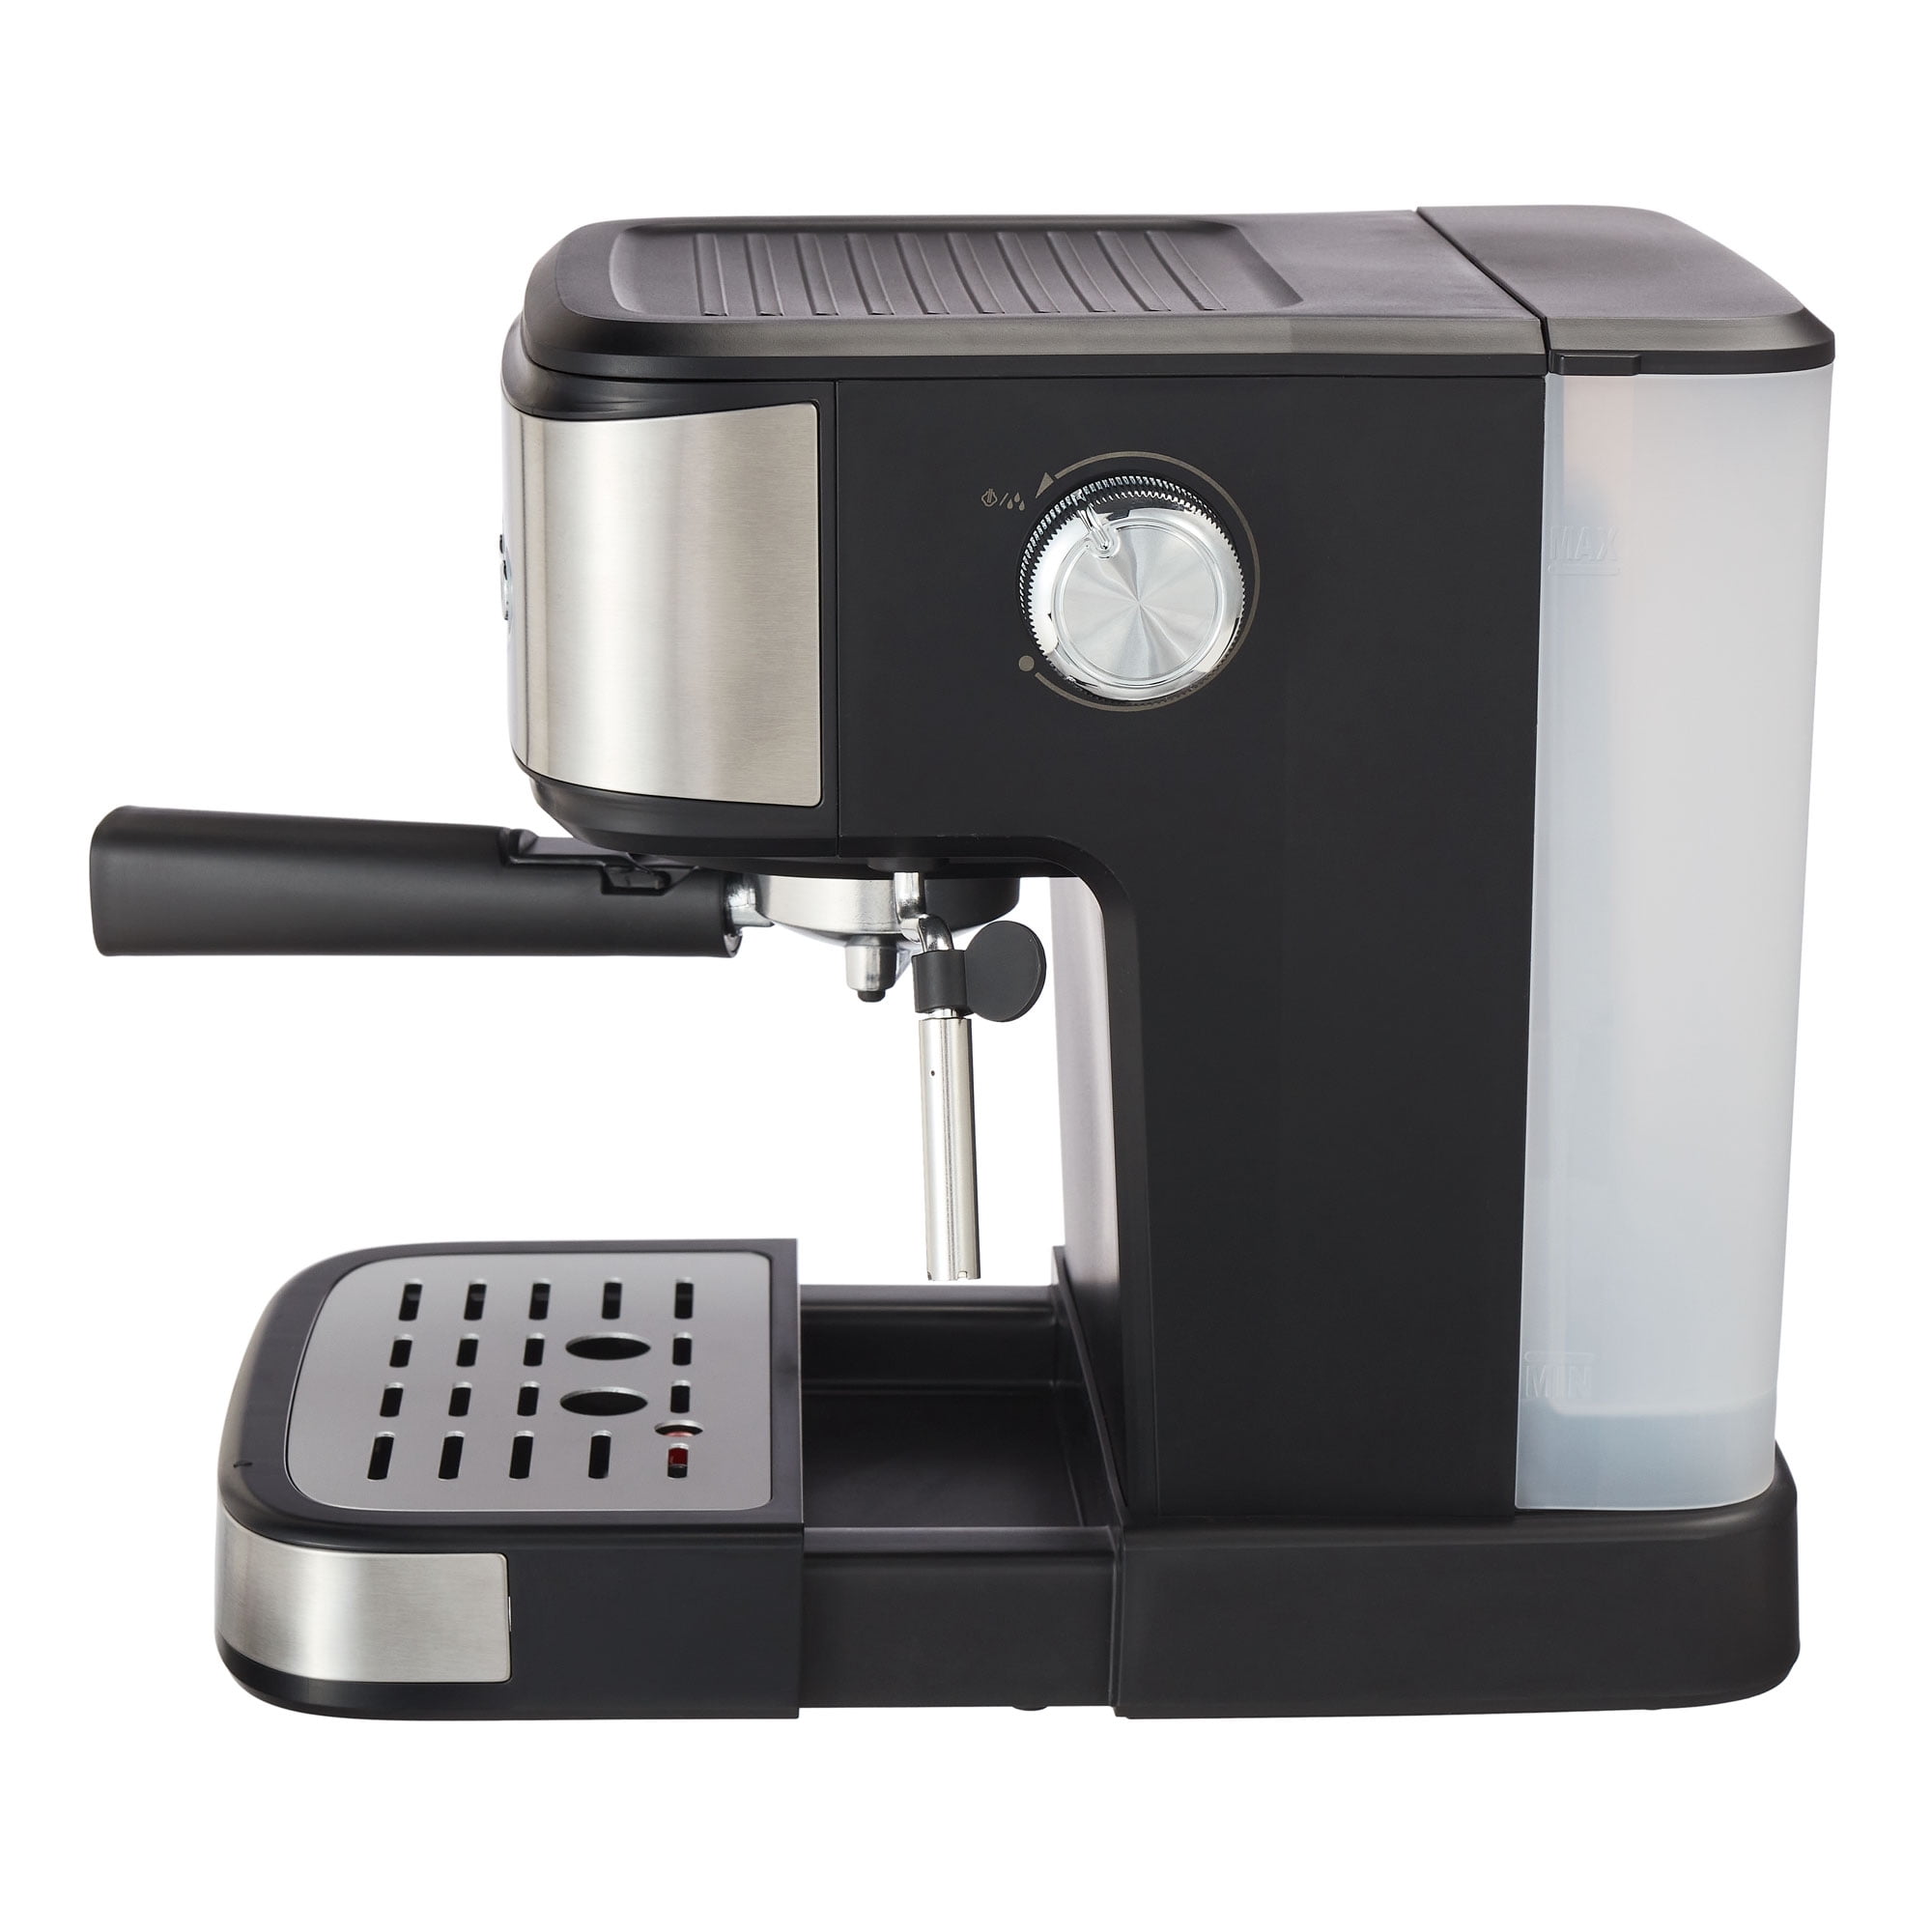 DESCALE VINEGAR FARBERWARE Espresso Maker MILK Frother 28035441 